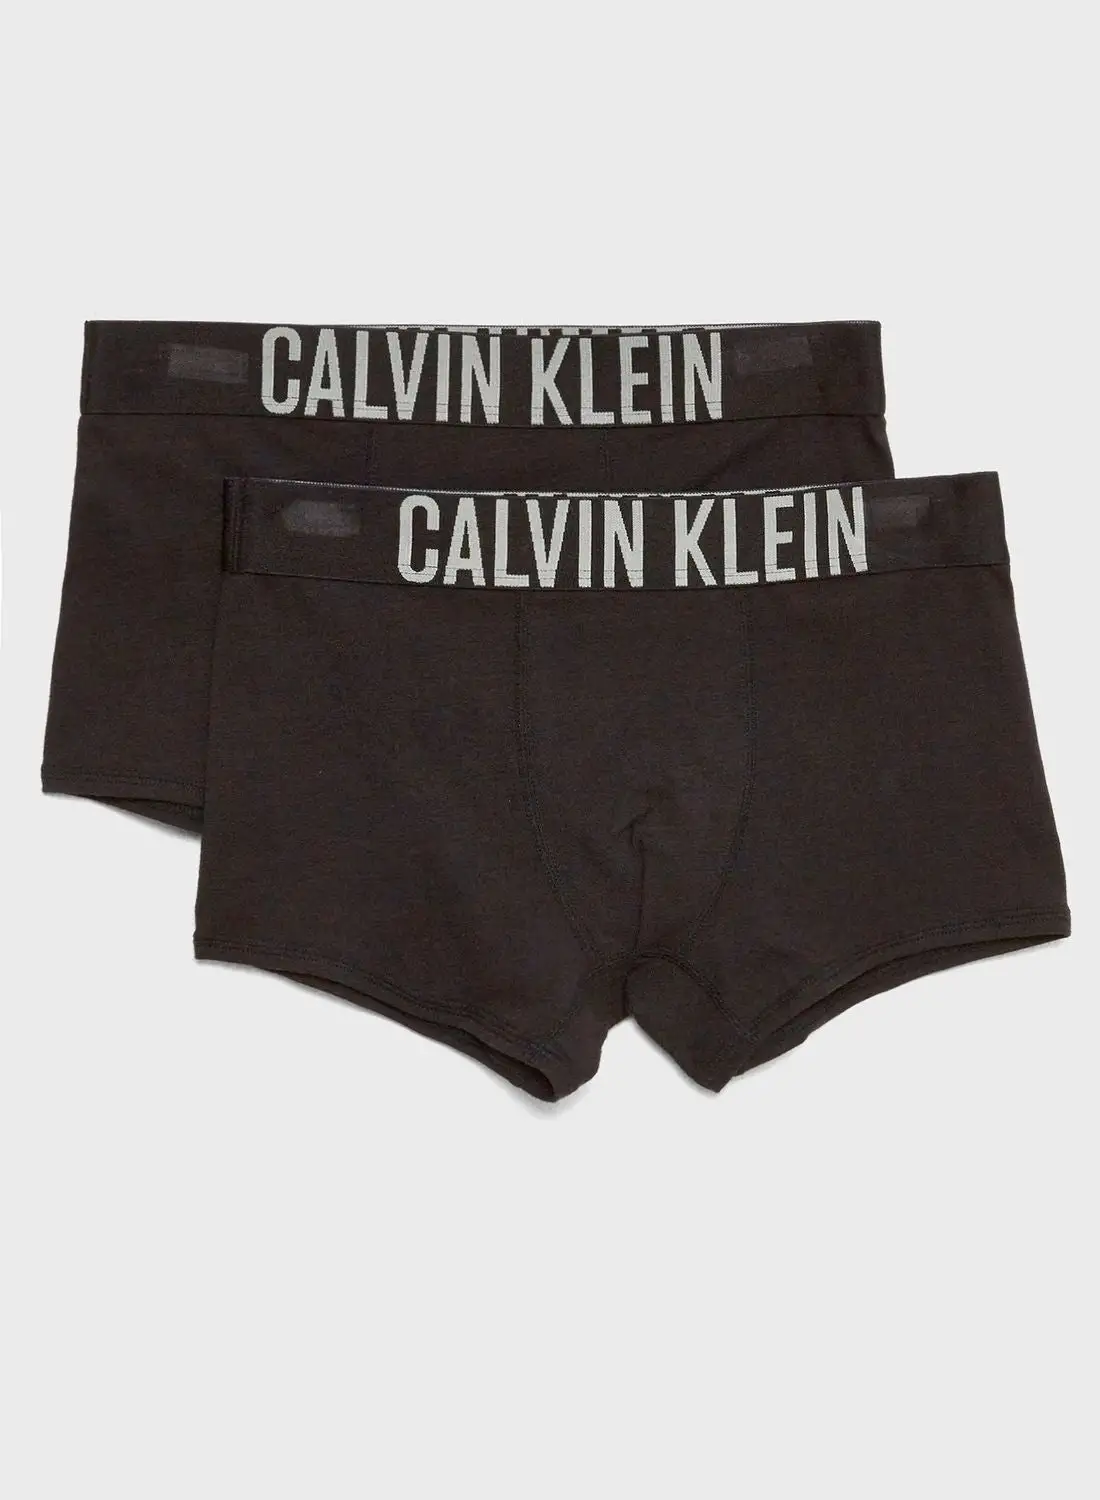 CALVIN KLEIN Teen 2 Pack Trunk